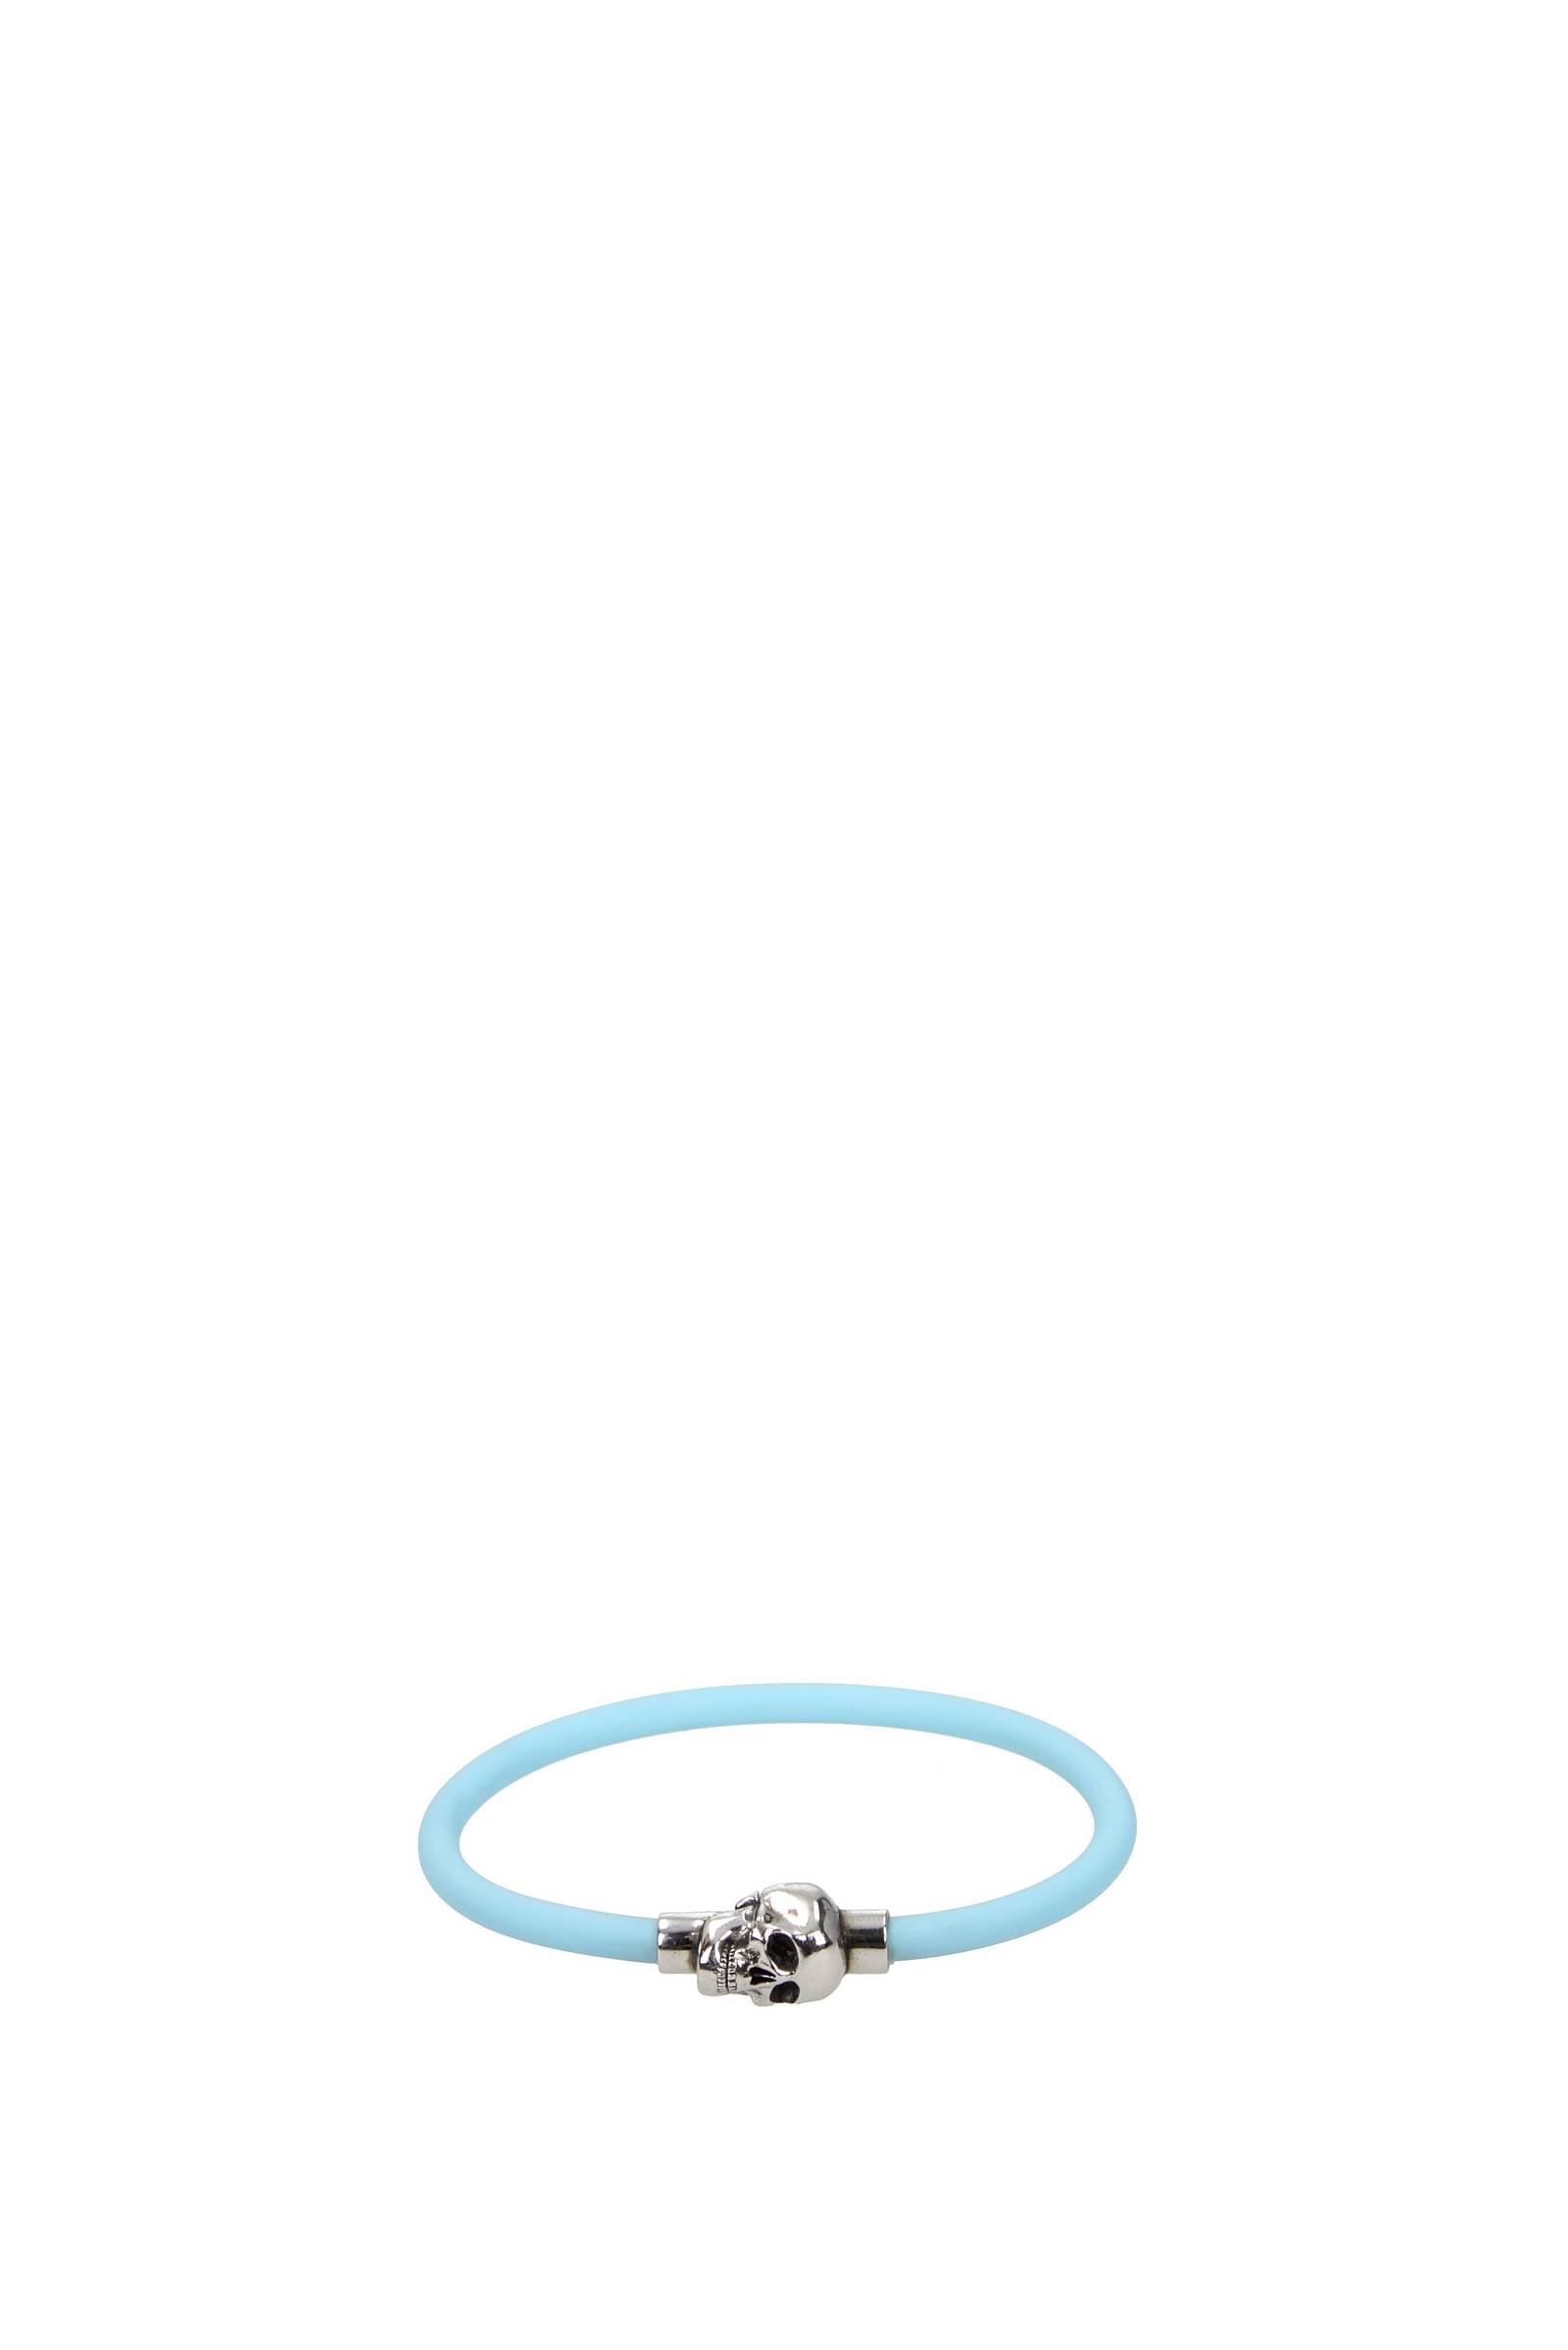 Mens Alexander McQueen black Charm Chain Bracelet | Harrods UK | Chain  bracelet, Bracelets, Chain